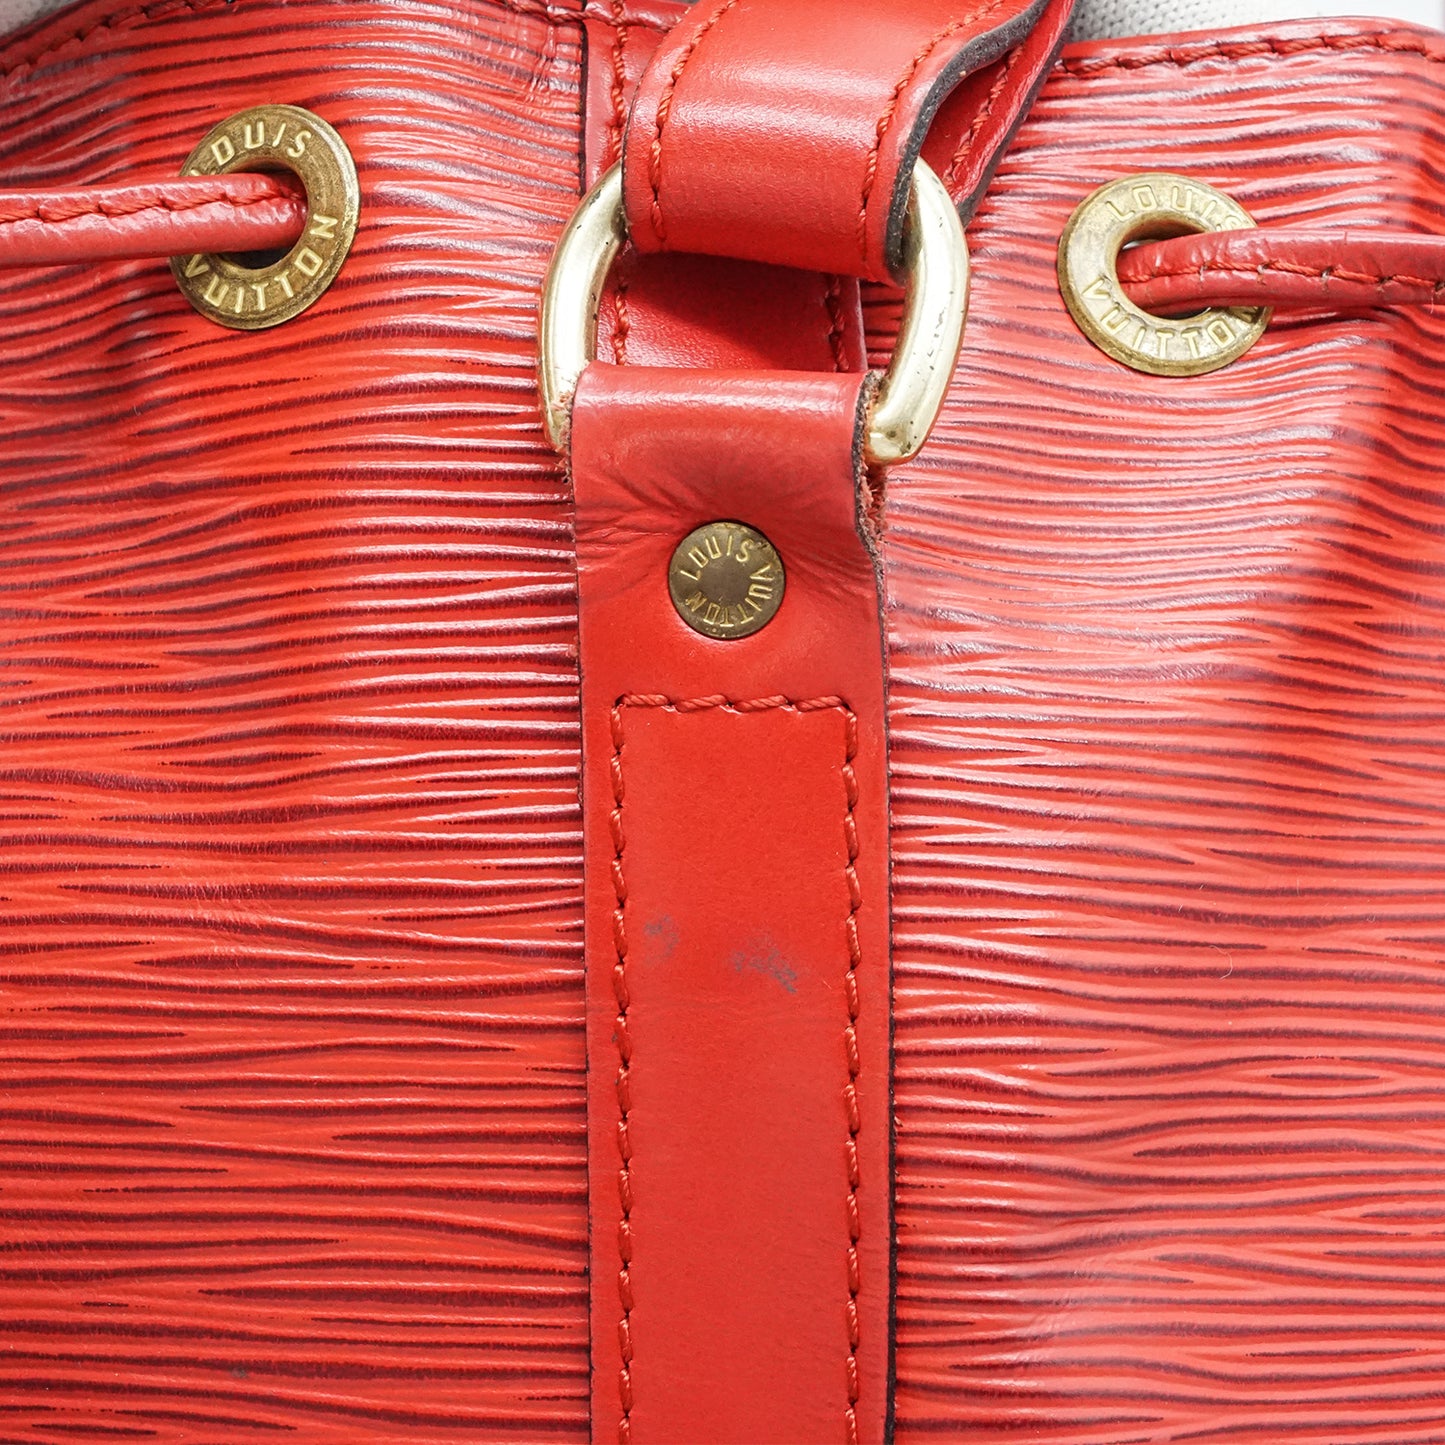 Epi Petit Noe Red Shoulder Bag